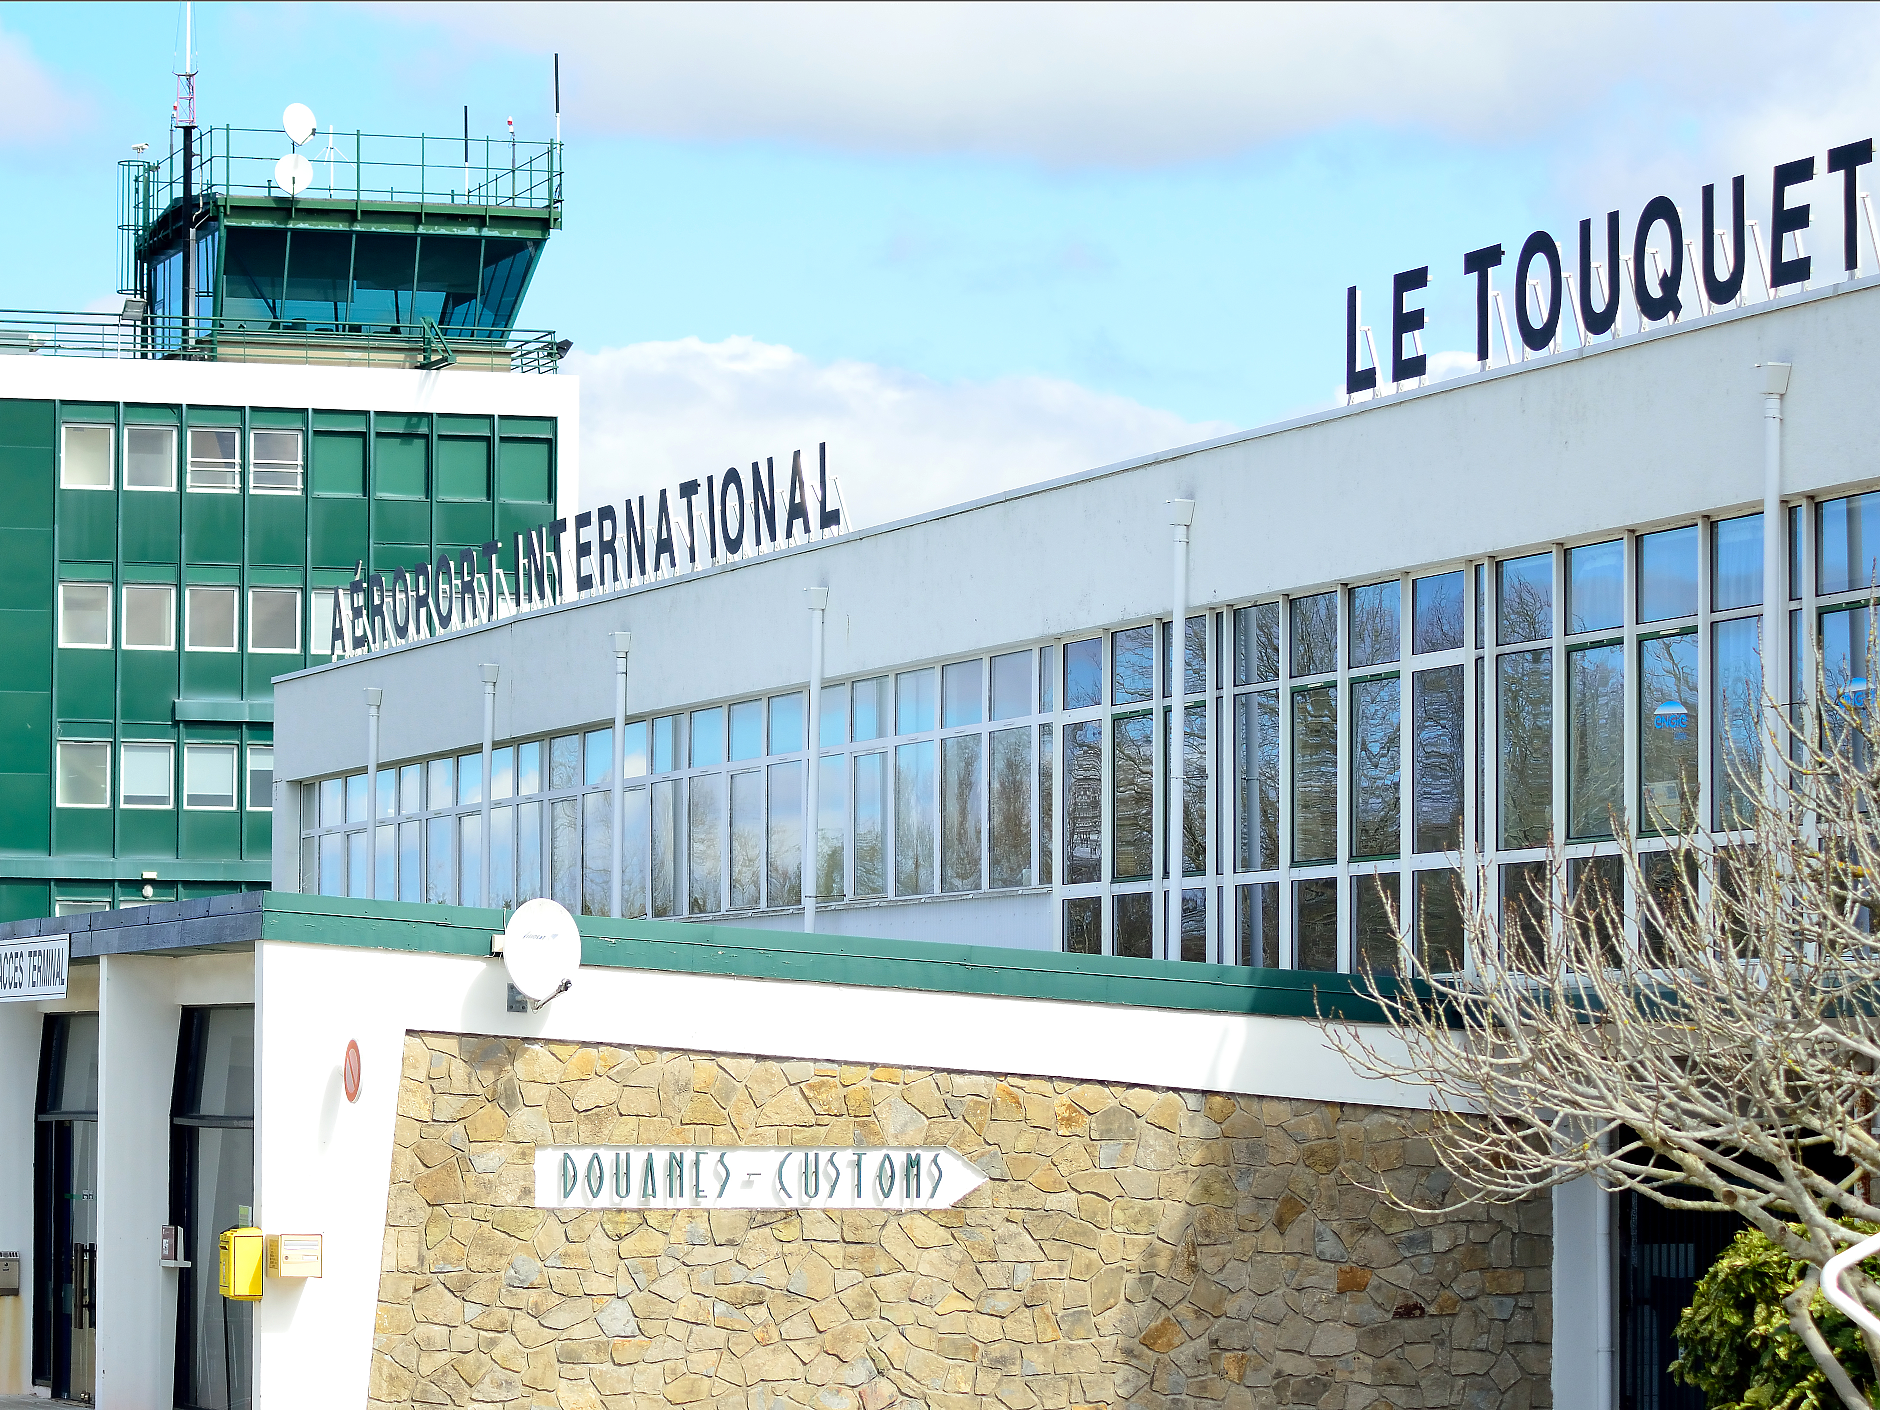 Френско летище ще бъде преименувано на Елизабет II